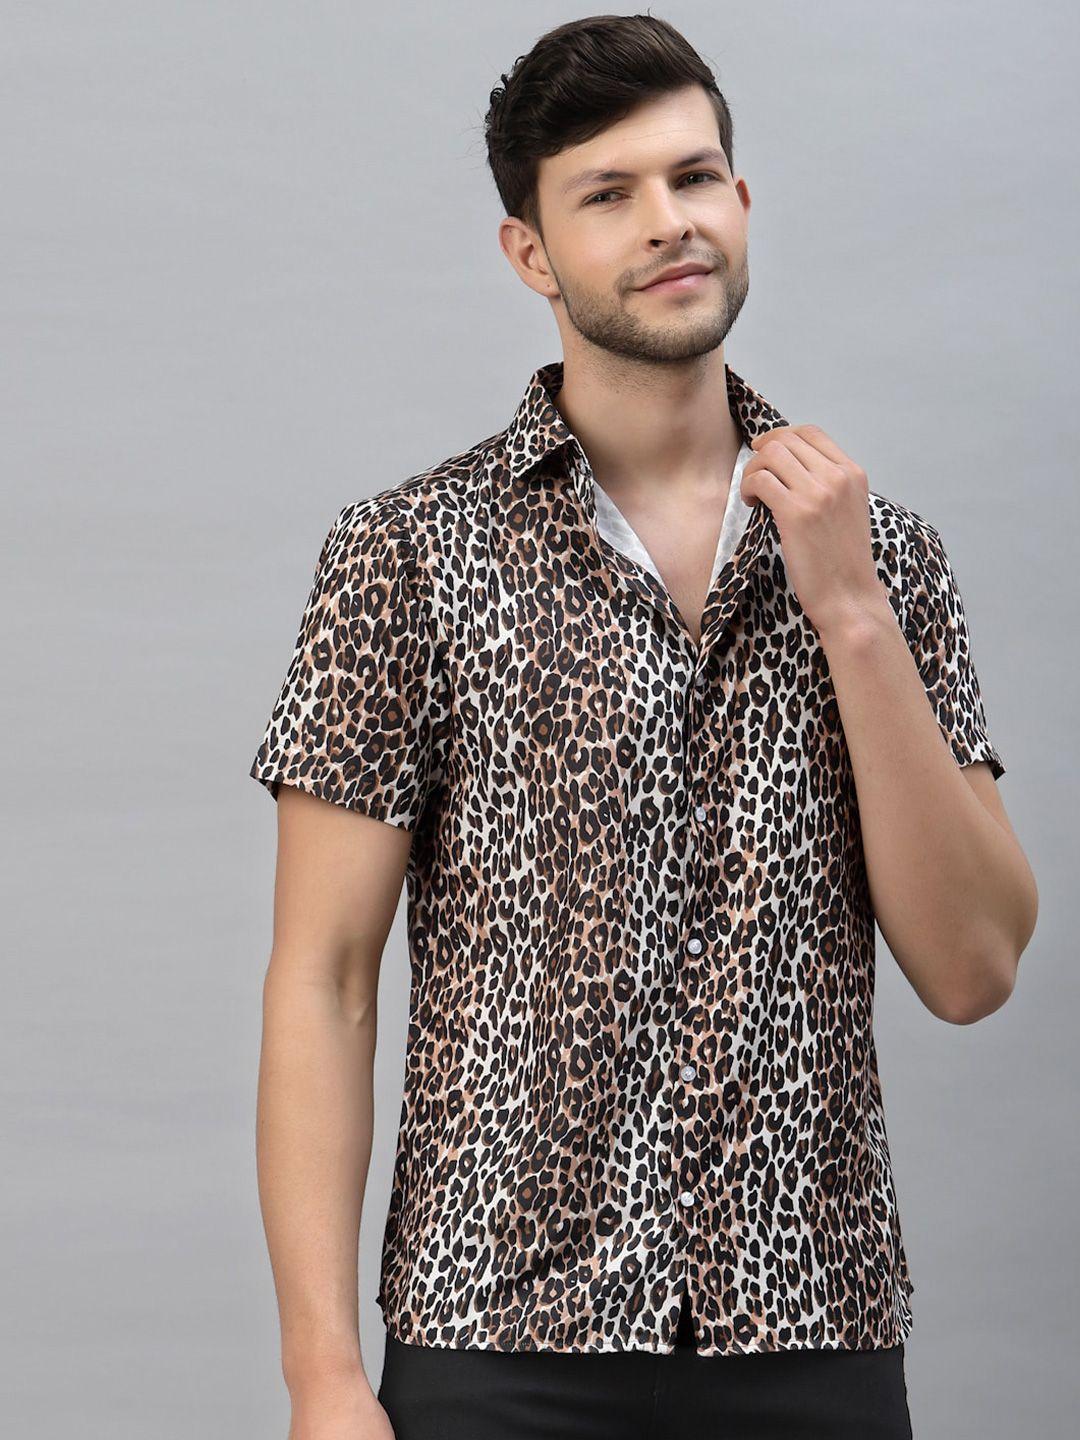 gavin paris smart slim fit animal skin printed casual shirt